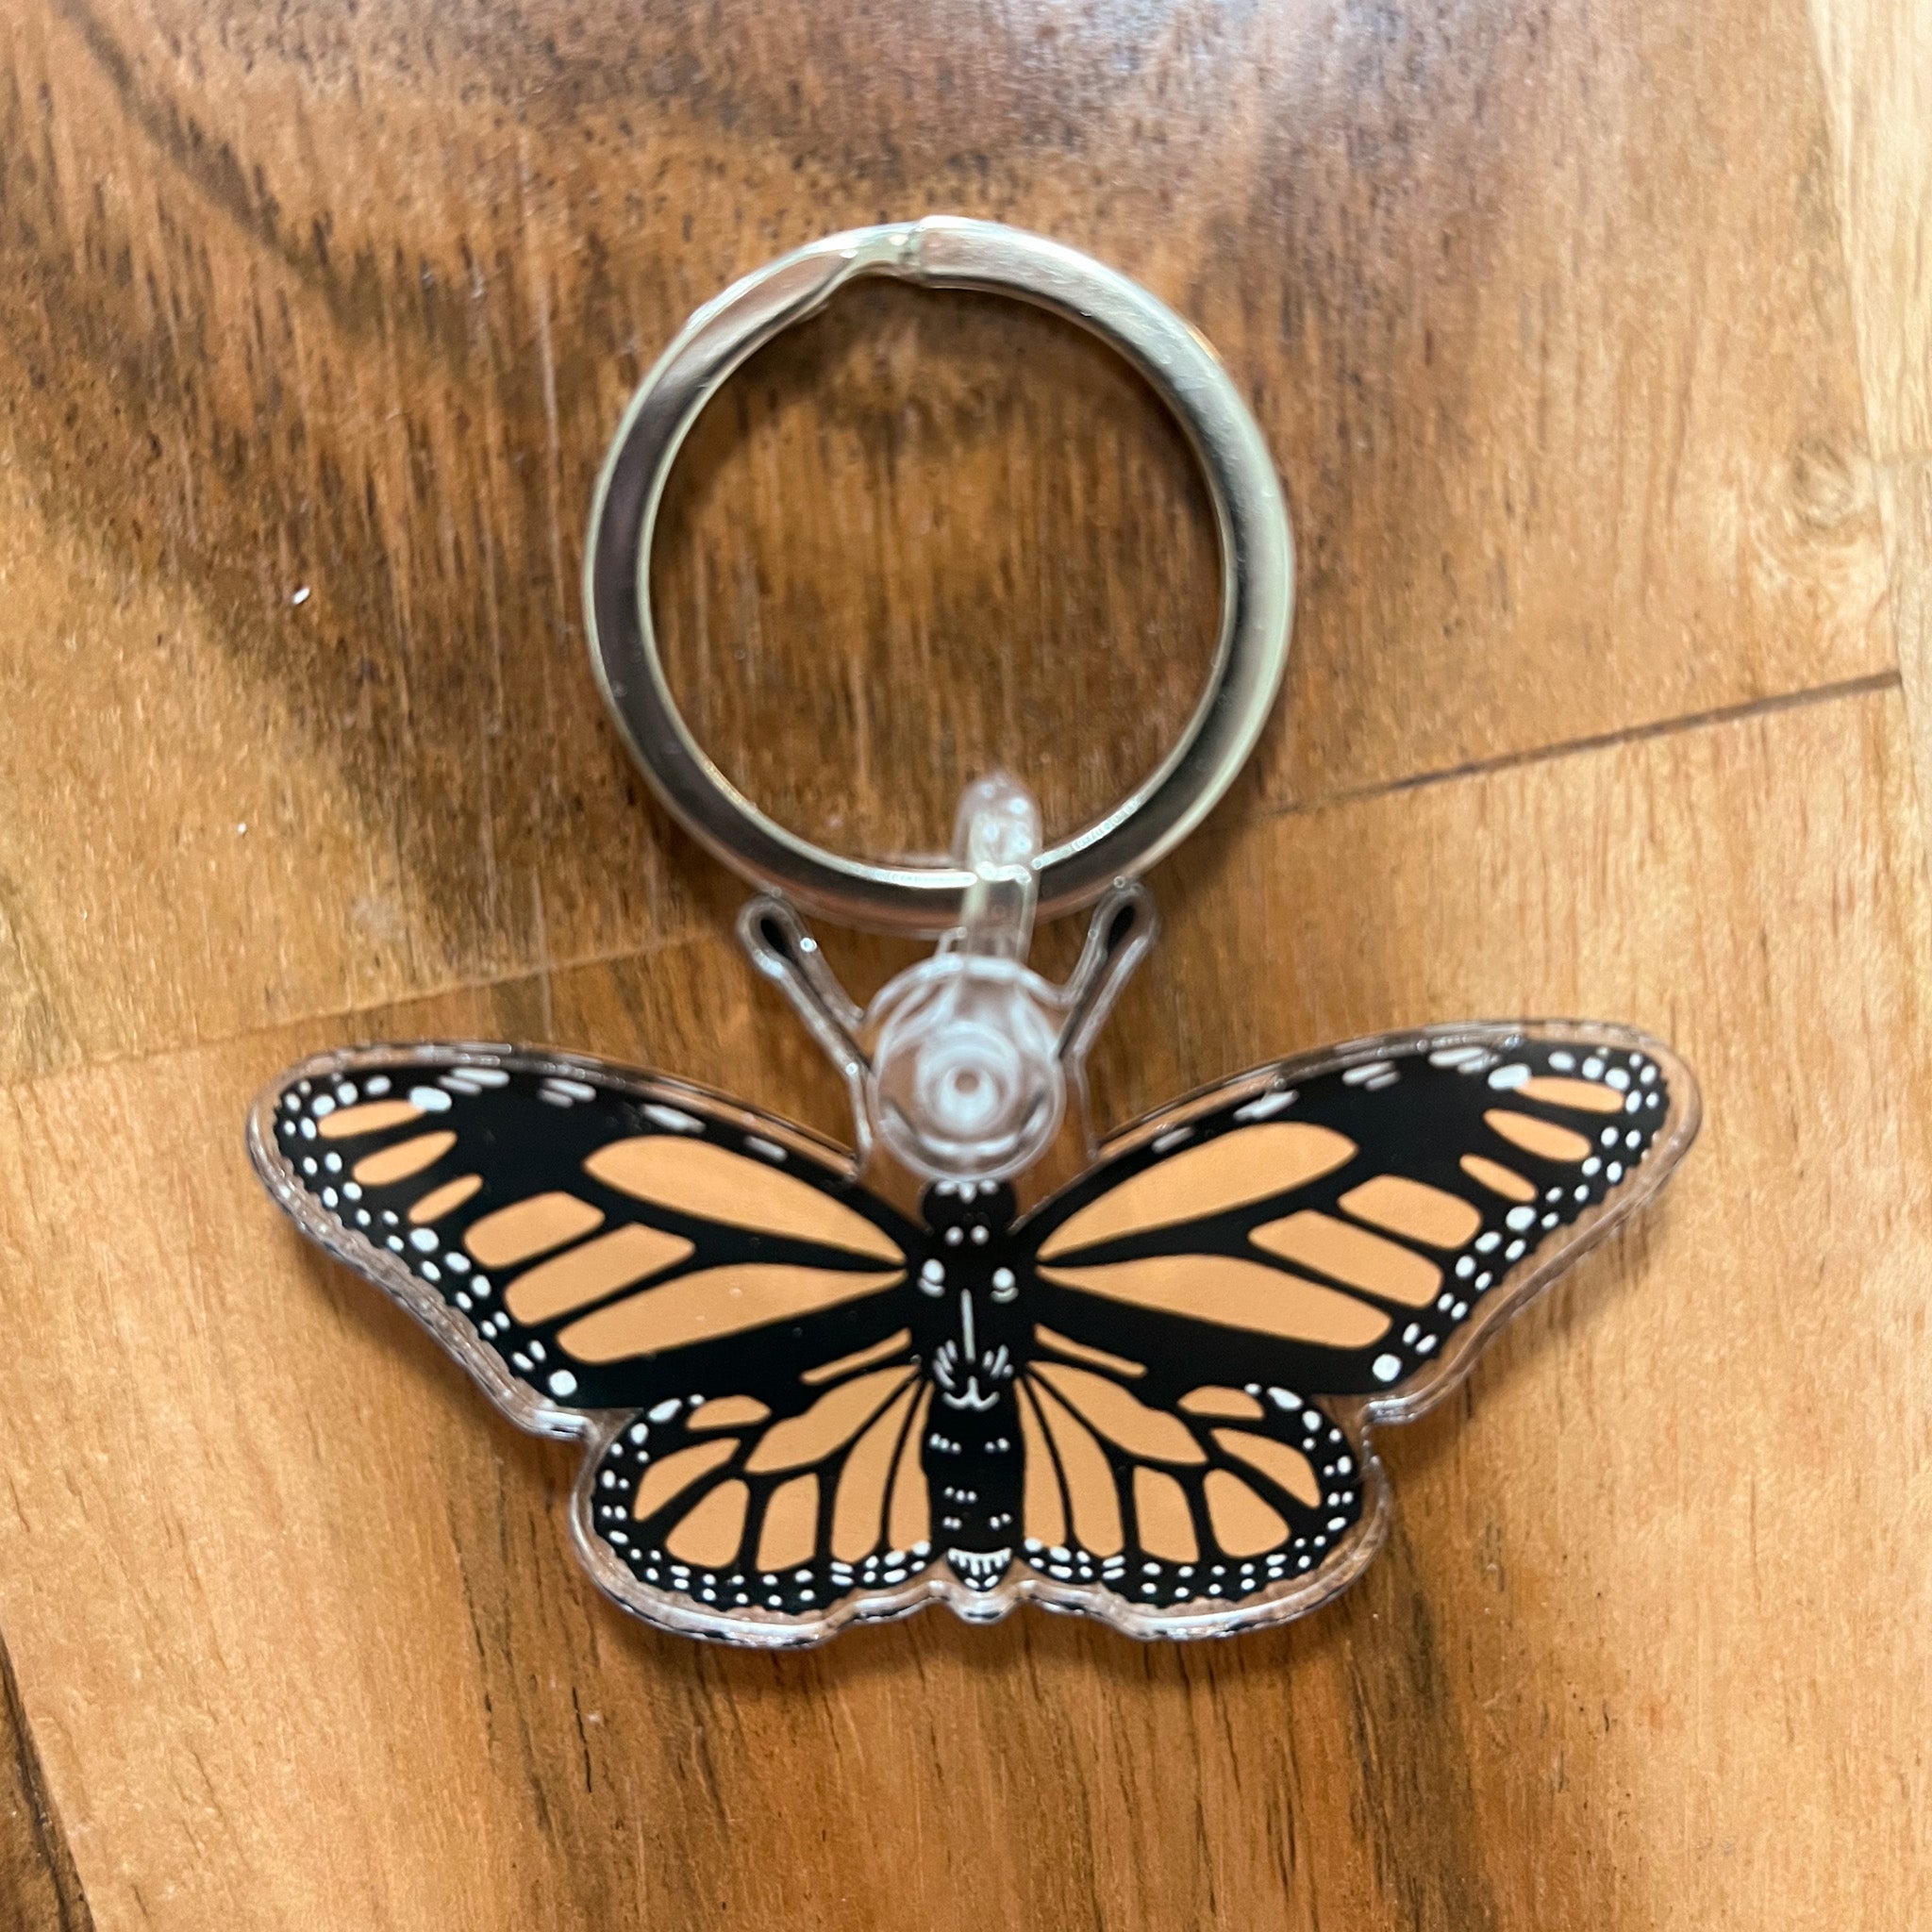 Monarch Butterfly Keychain